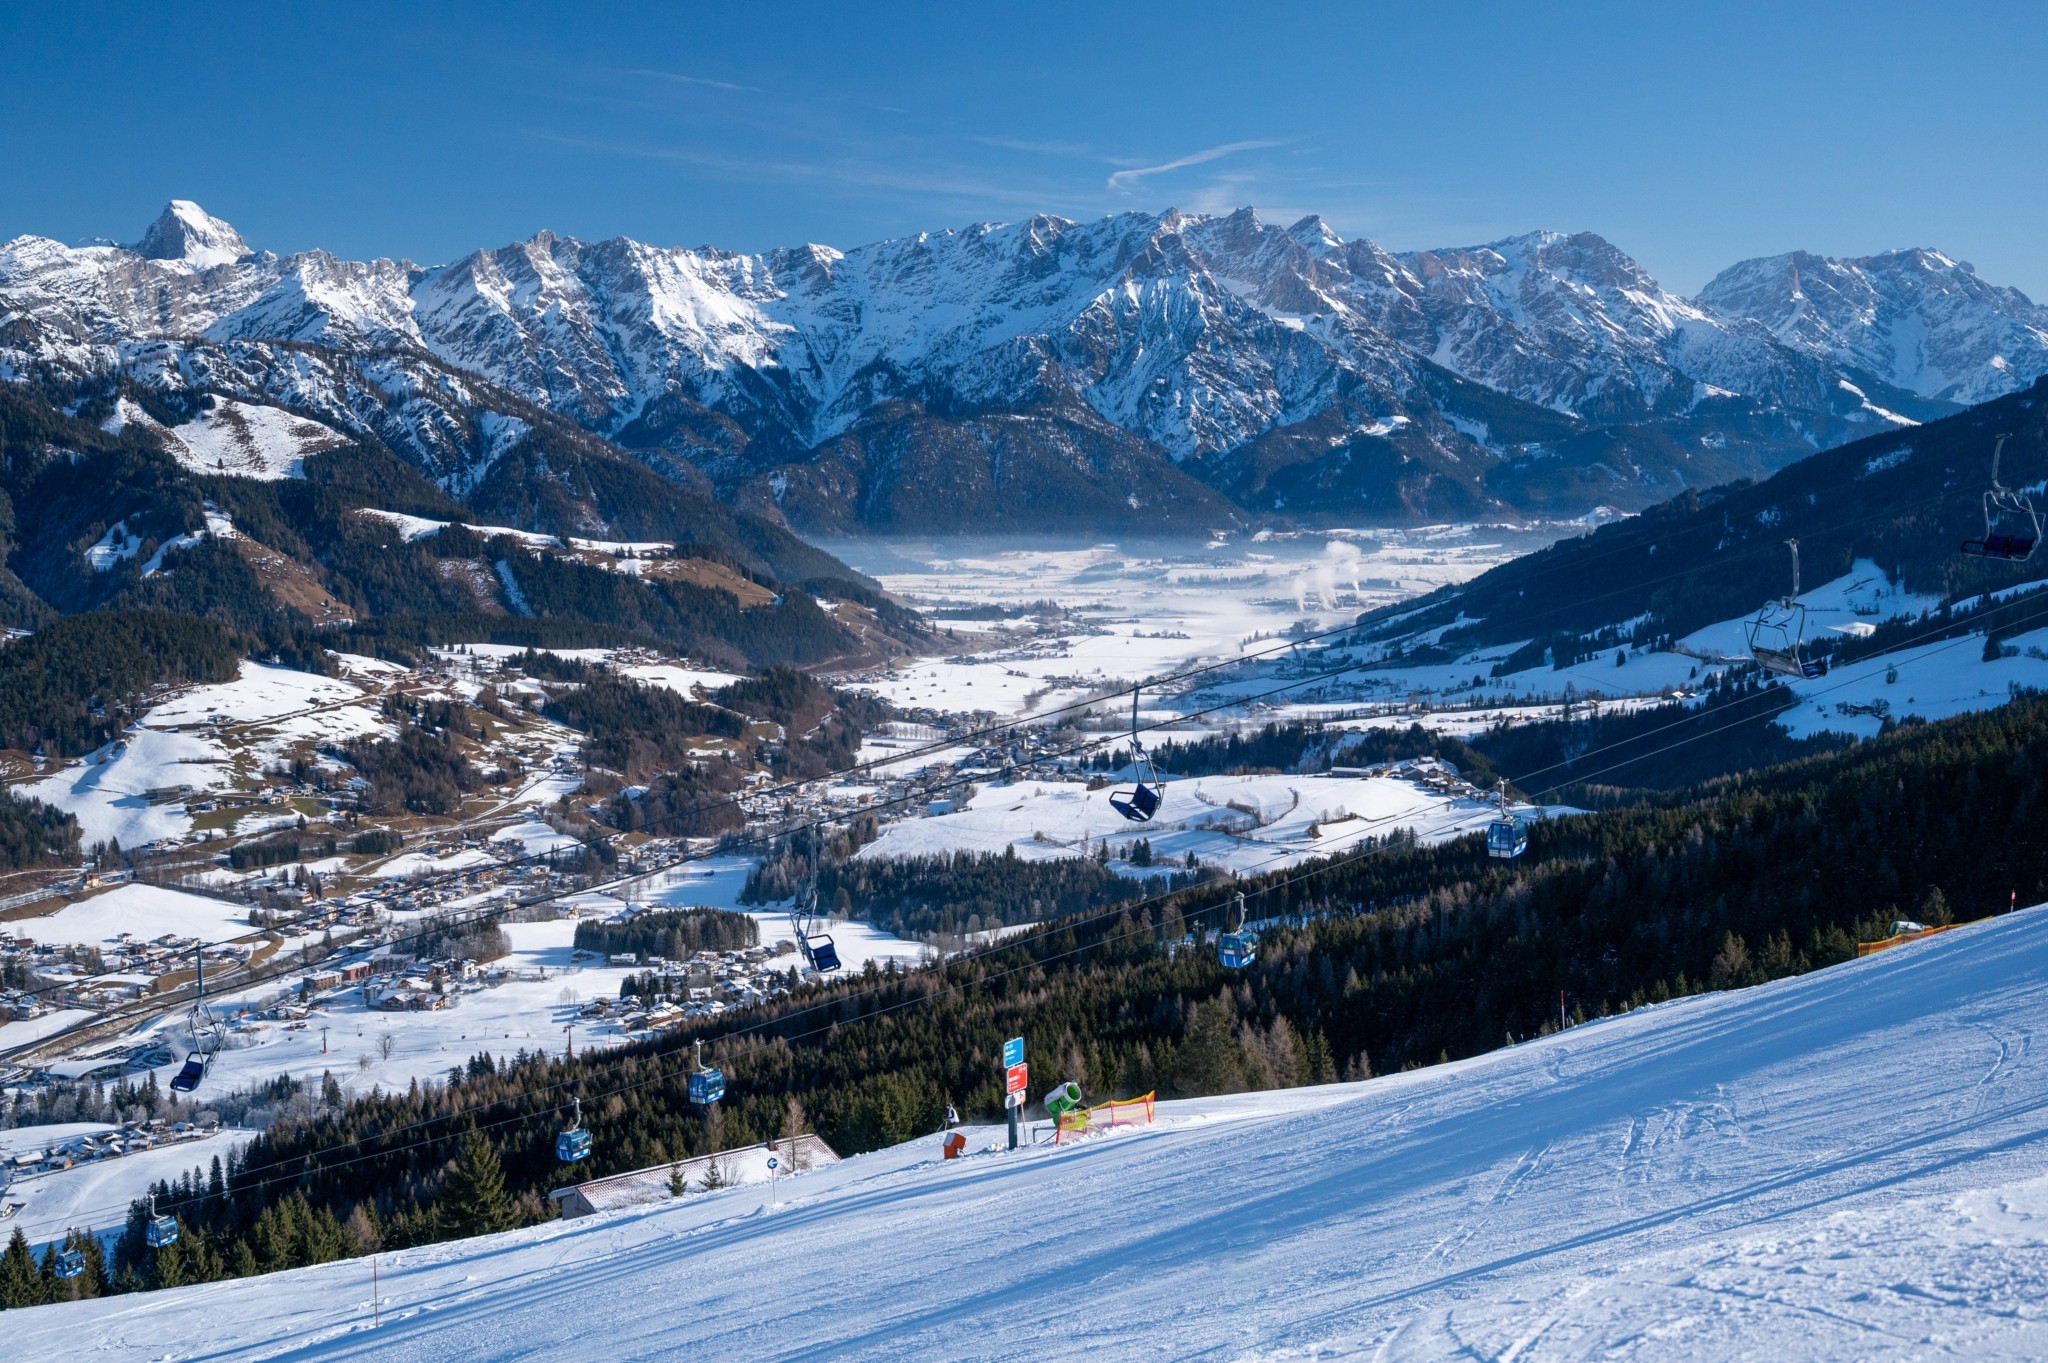 Τα καλύτερα ski resorts της Ευρώπης. Κρυμμένα διαμάντια των Αλπεων και απέραντες πίστες